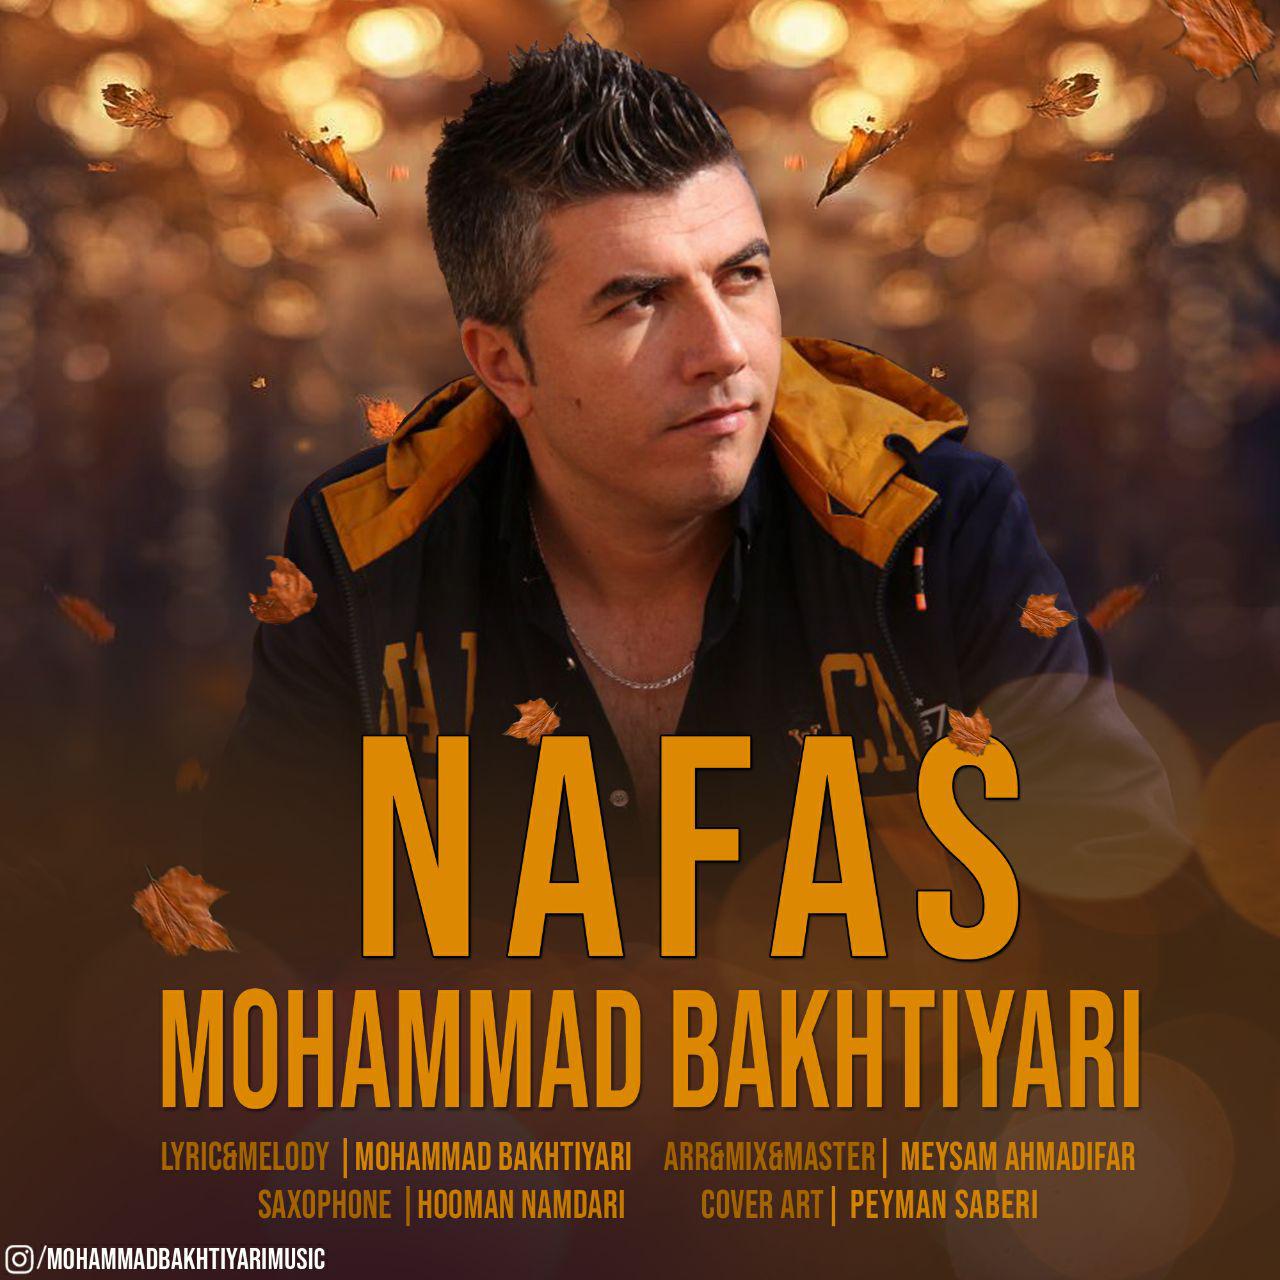  دانلود آهنگ جدید محمد بختیاری - نفس | Download New Music By Mohammad Bakhtiyari - Nafas